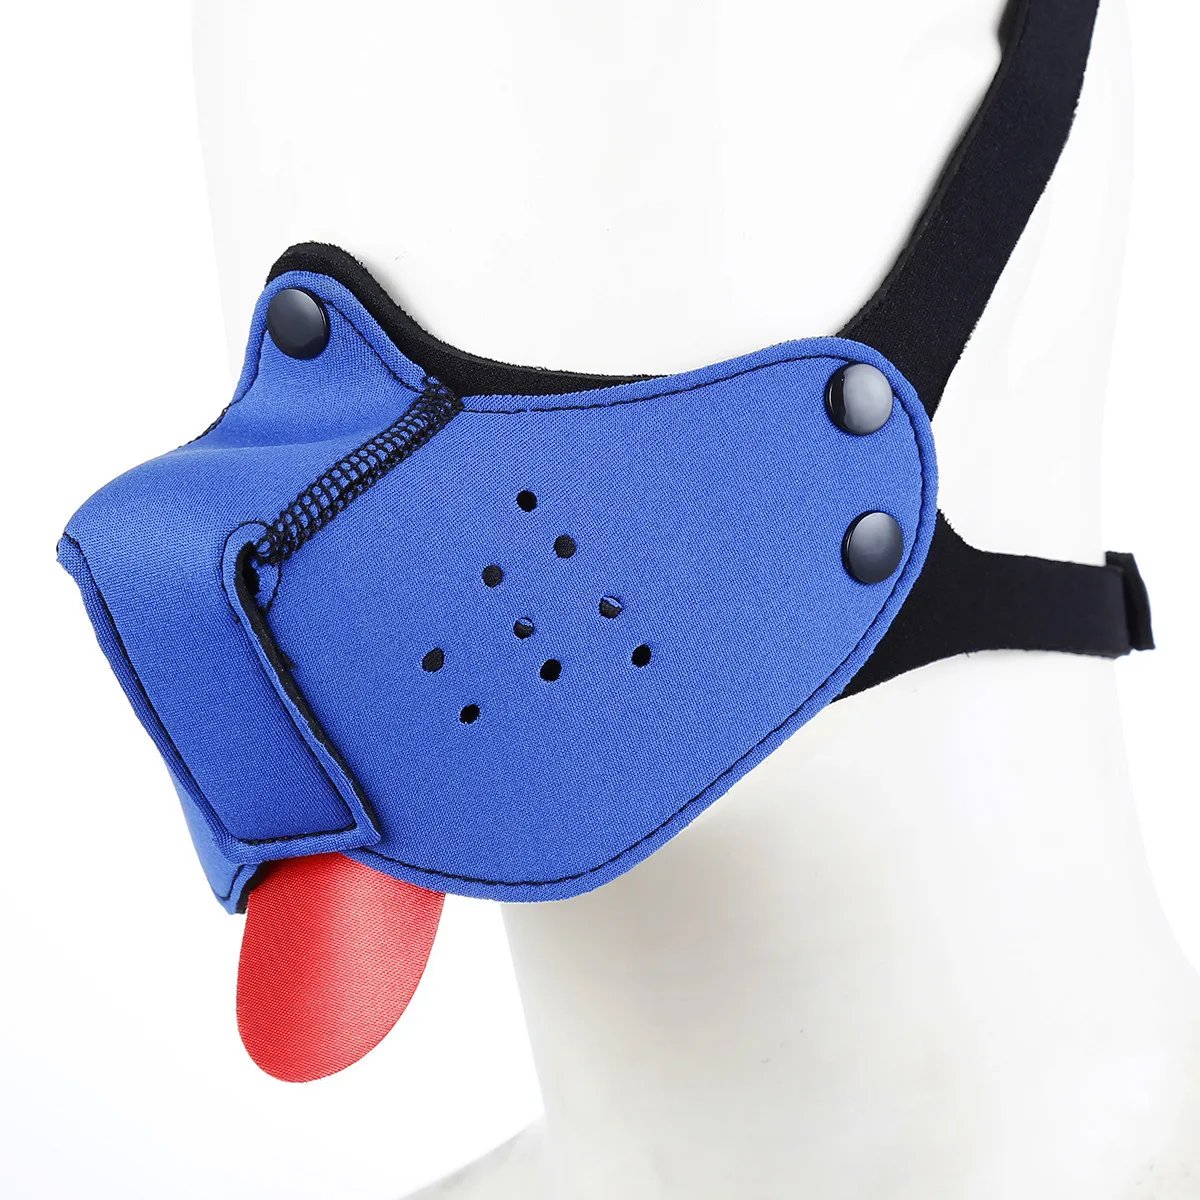 Шлем-маска для собаки Puppy Play Cosplay из резины с воротником на шею. Сексуальный фетиш-костюм для бондажа и BDSM-игр для взрослых пар. Товар для флирта и игр.